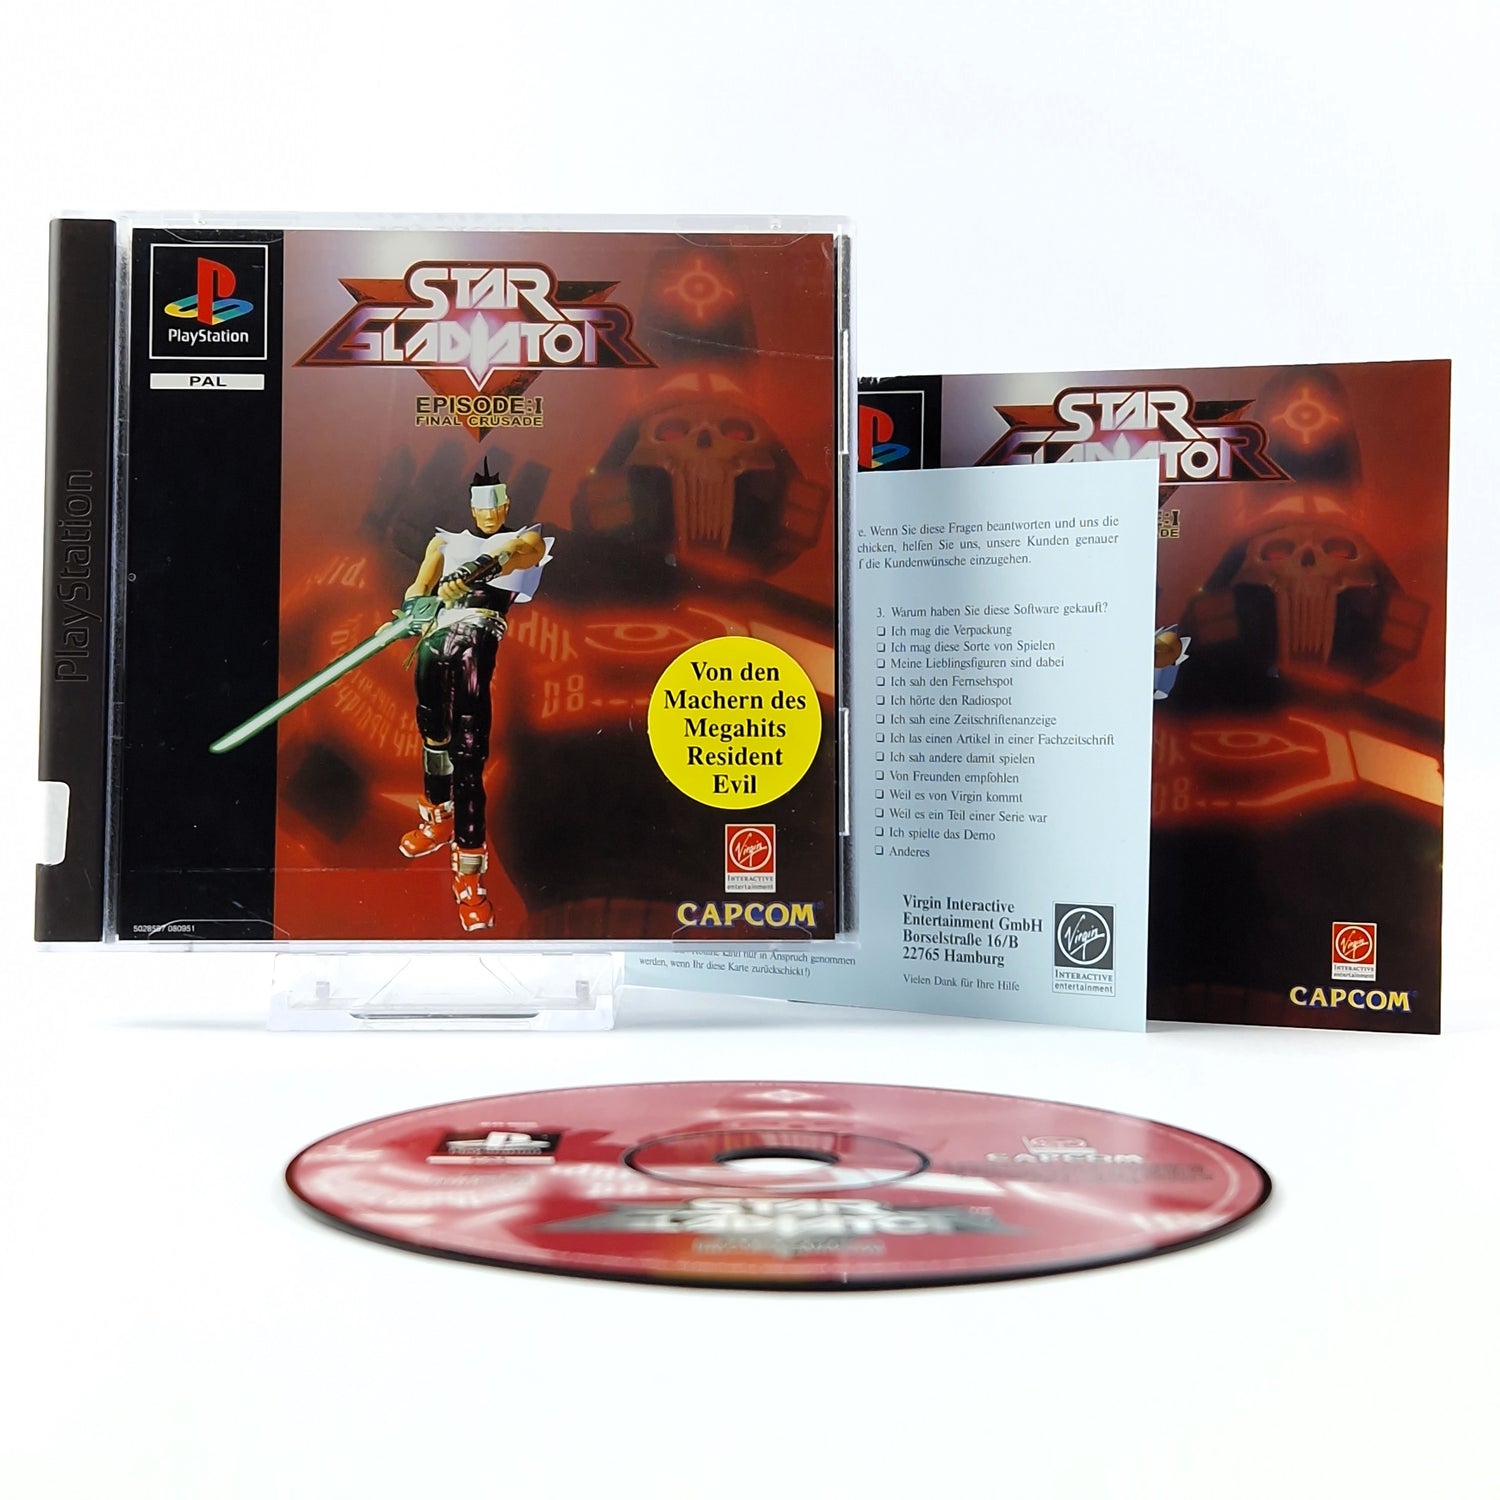 Playstation 1 Spiel : Star Gladiator Episode I Final Crusade - CD Anleitung OVP